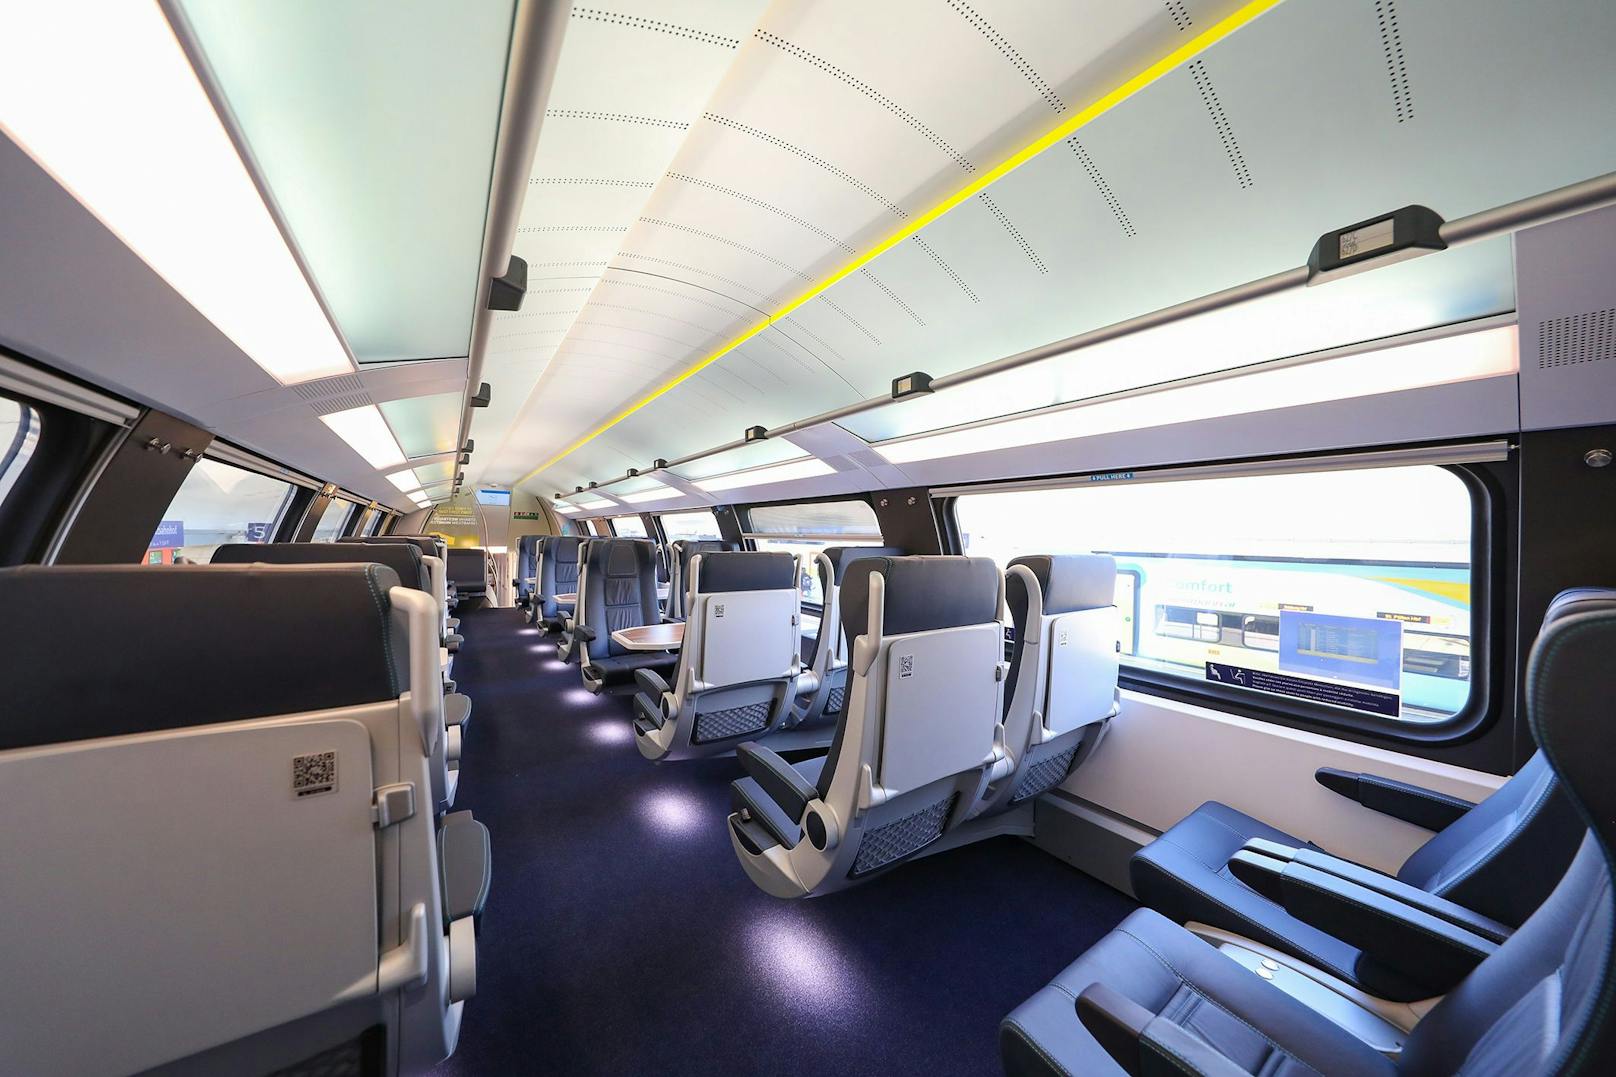 Der Komfort auf den 506 Ledersitzplätzen entspricht in allen Wagen dem der ersten Klasse.